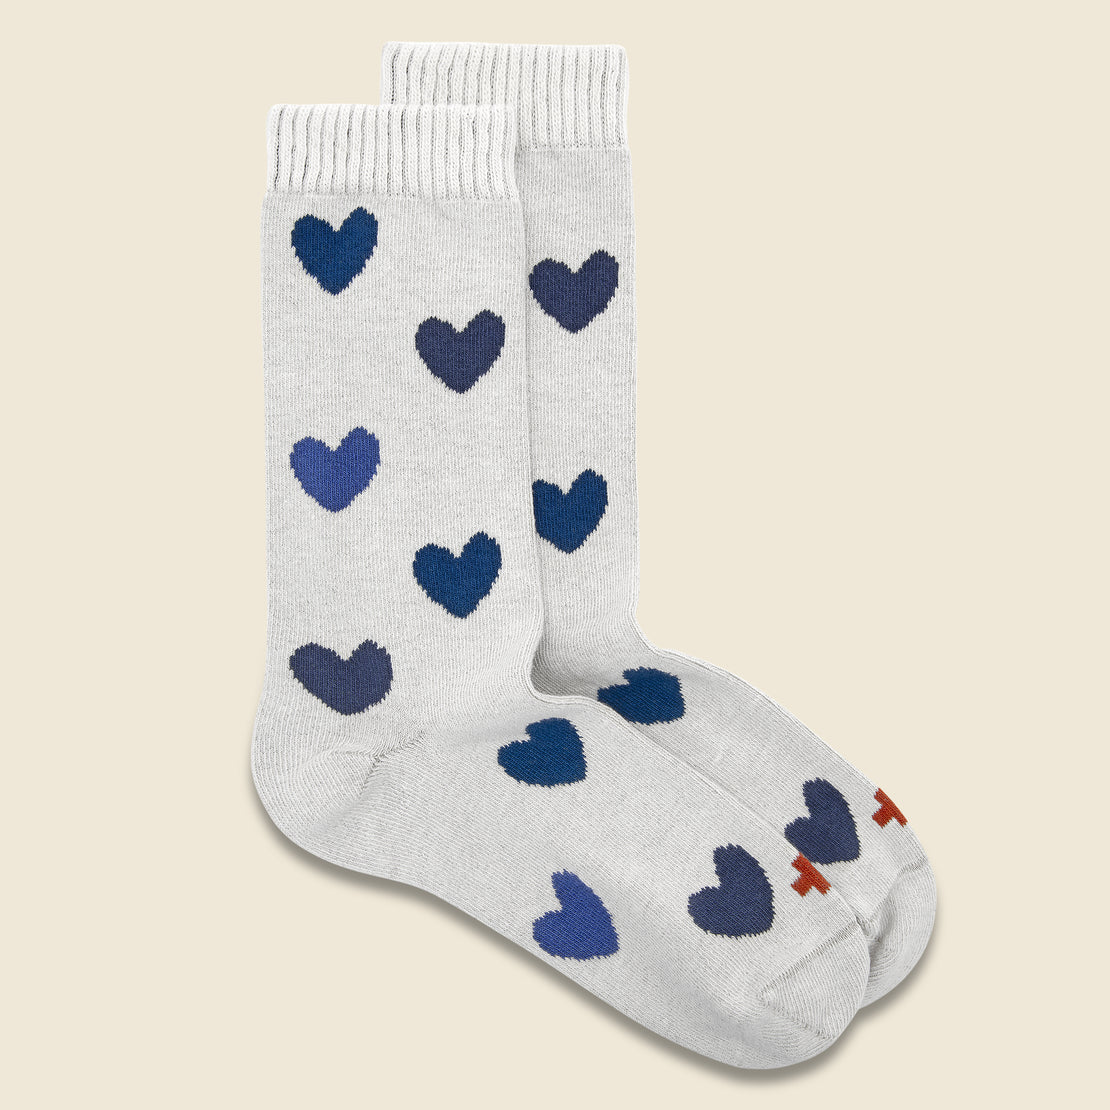 Imogene + Willie Heart Socks - Natural/Blue